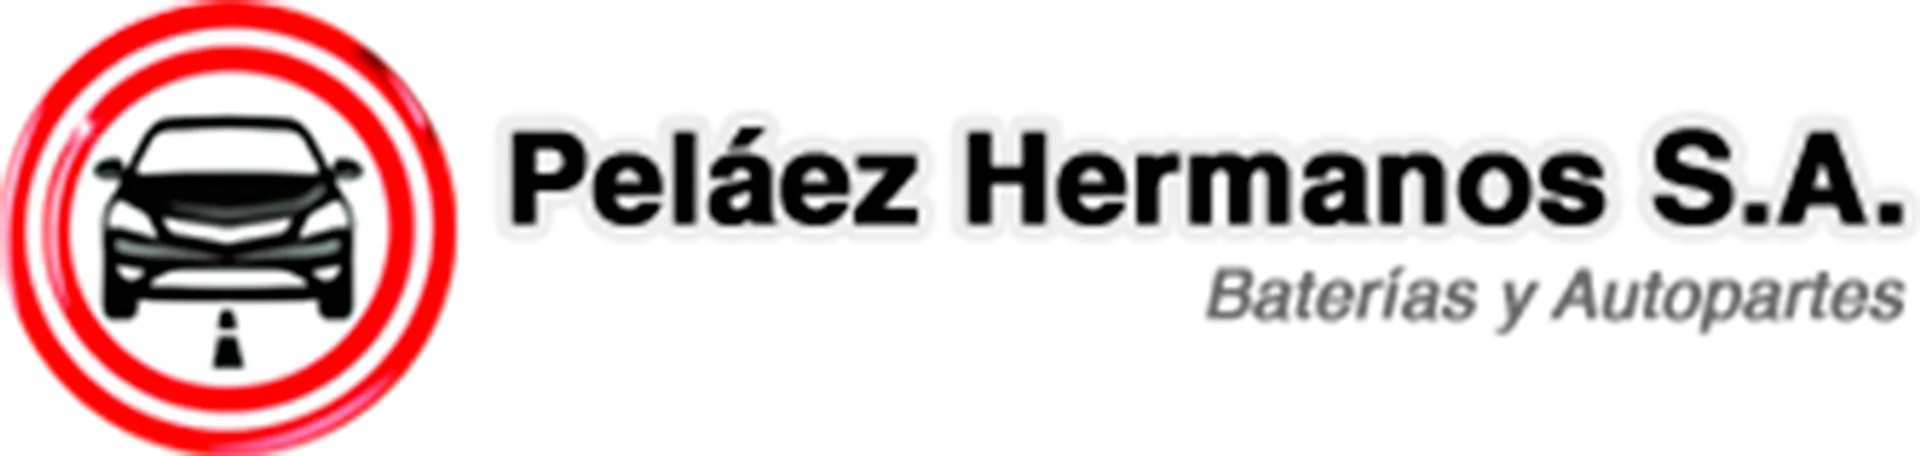 PELÁEZ HERMANOS logo de catálogo